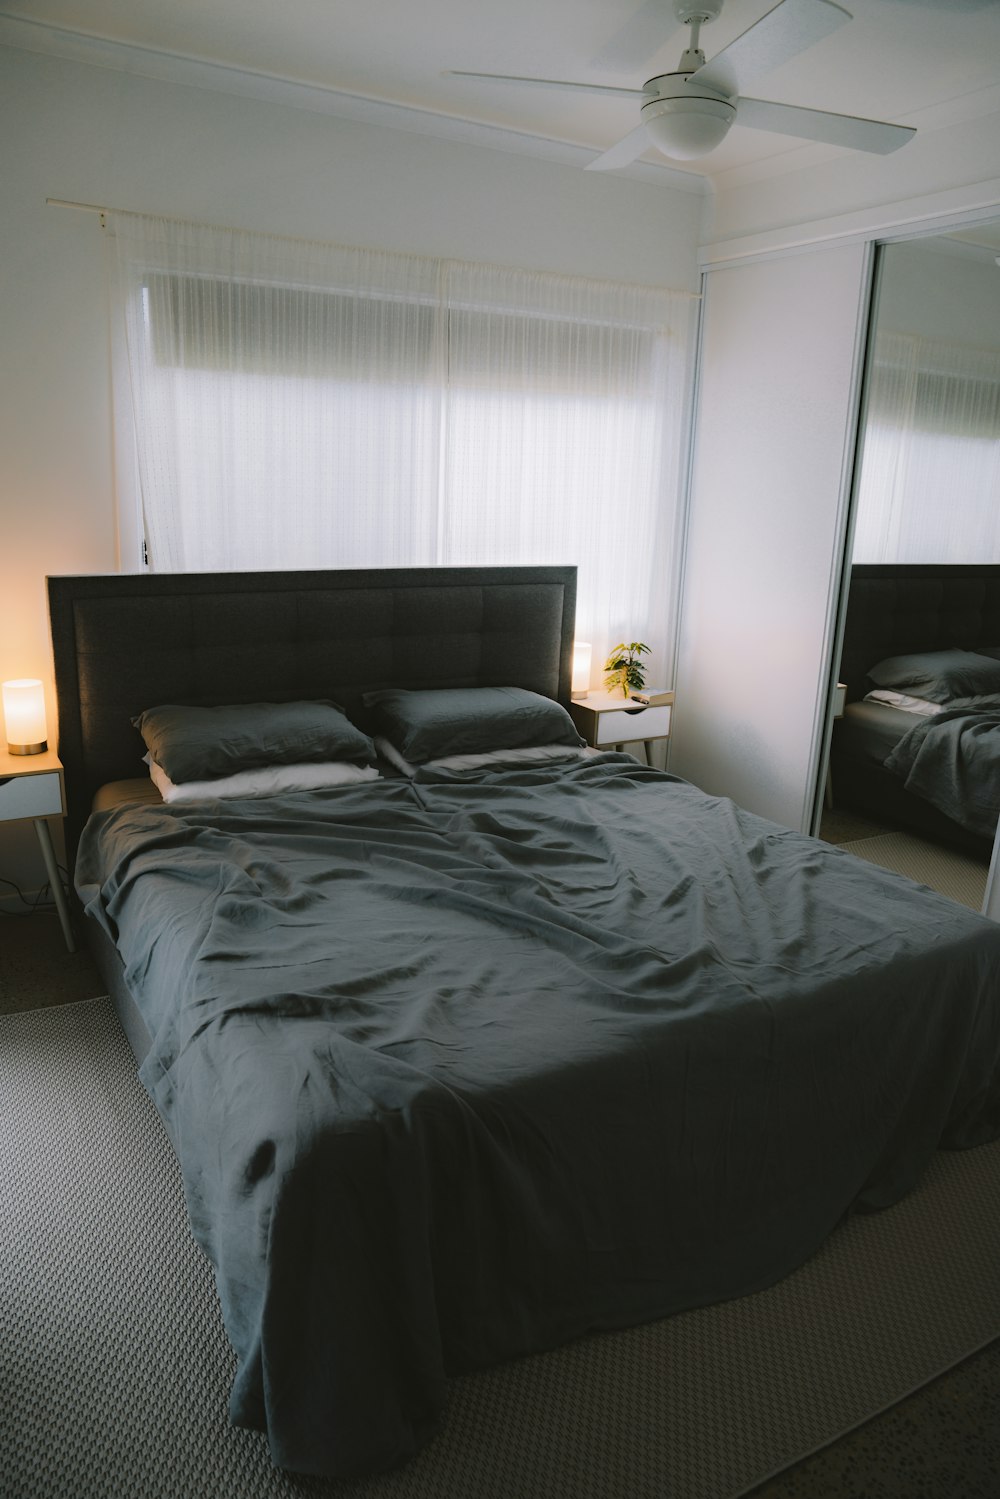 black bed linen on bed